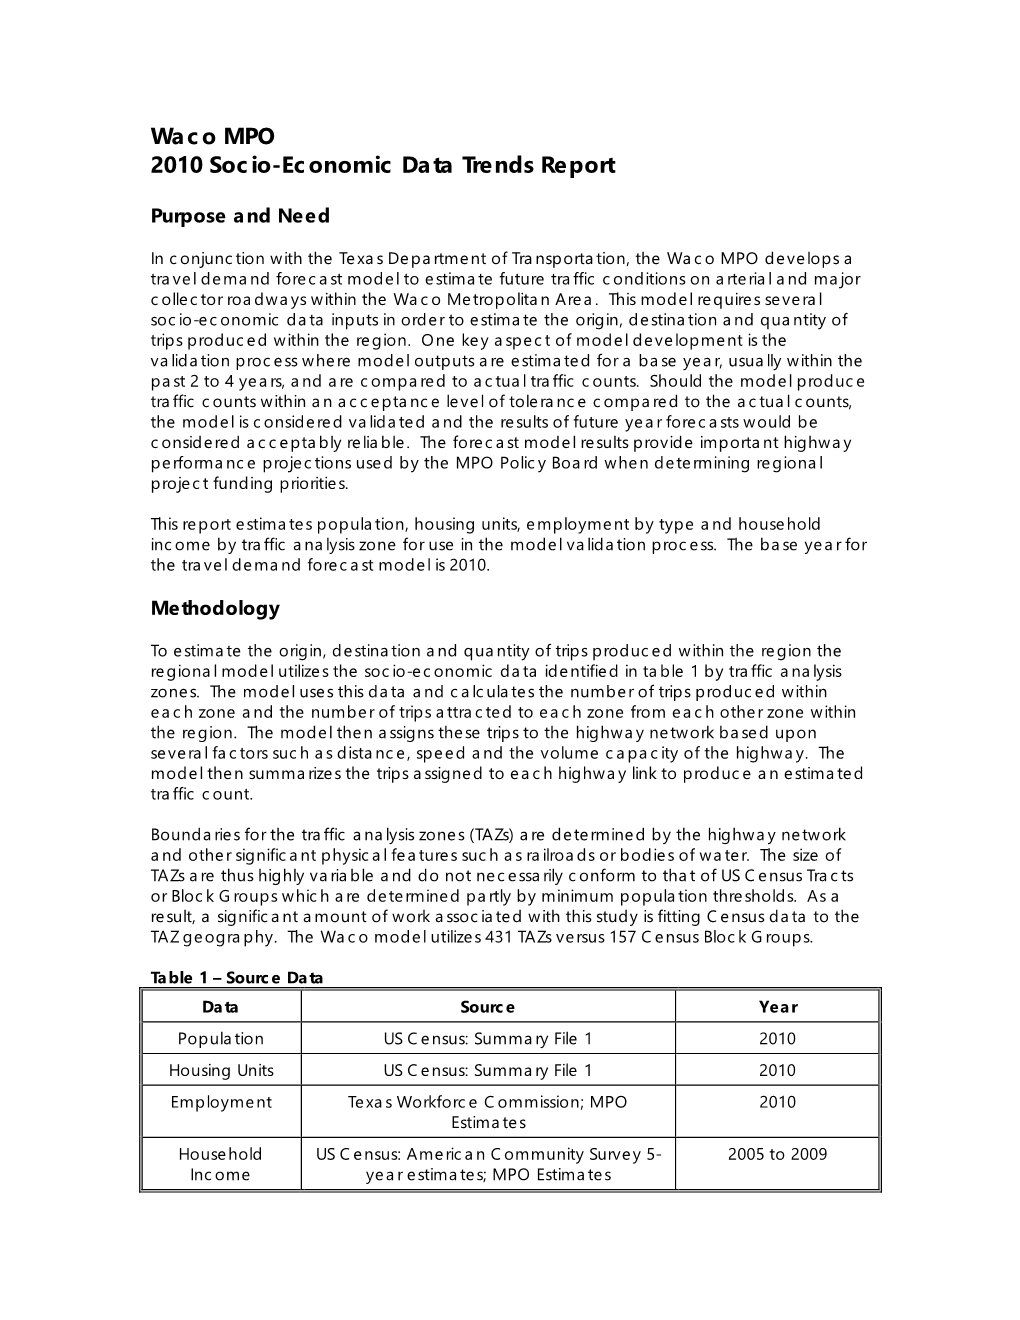 Waco MPO 2010 Socio-Economic Data Trends Report